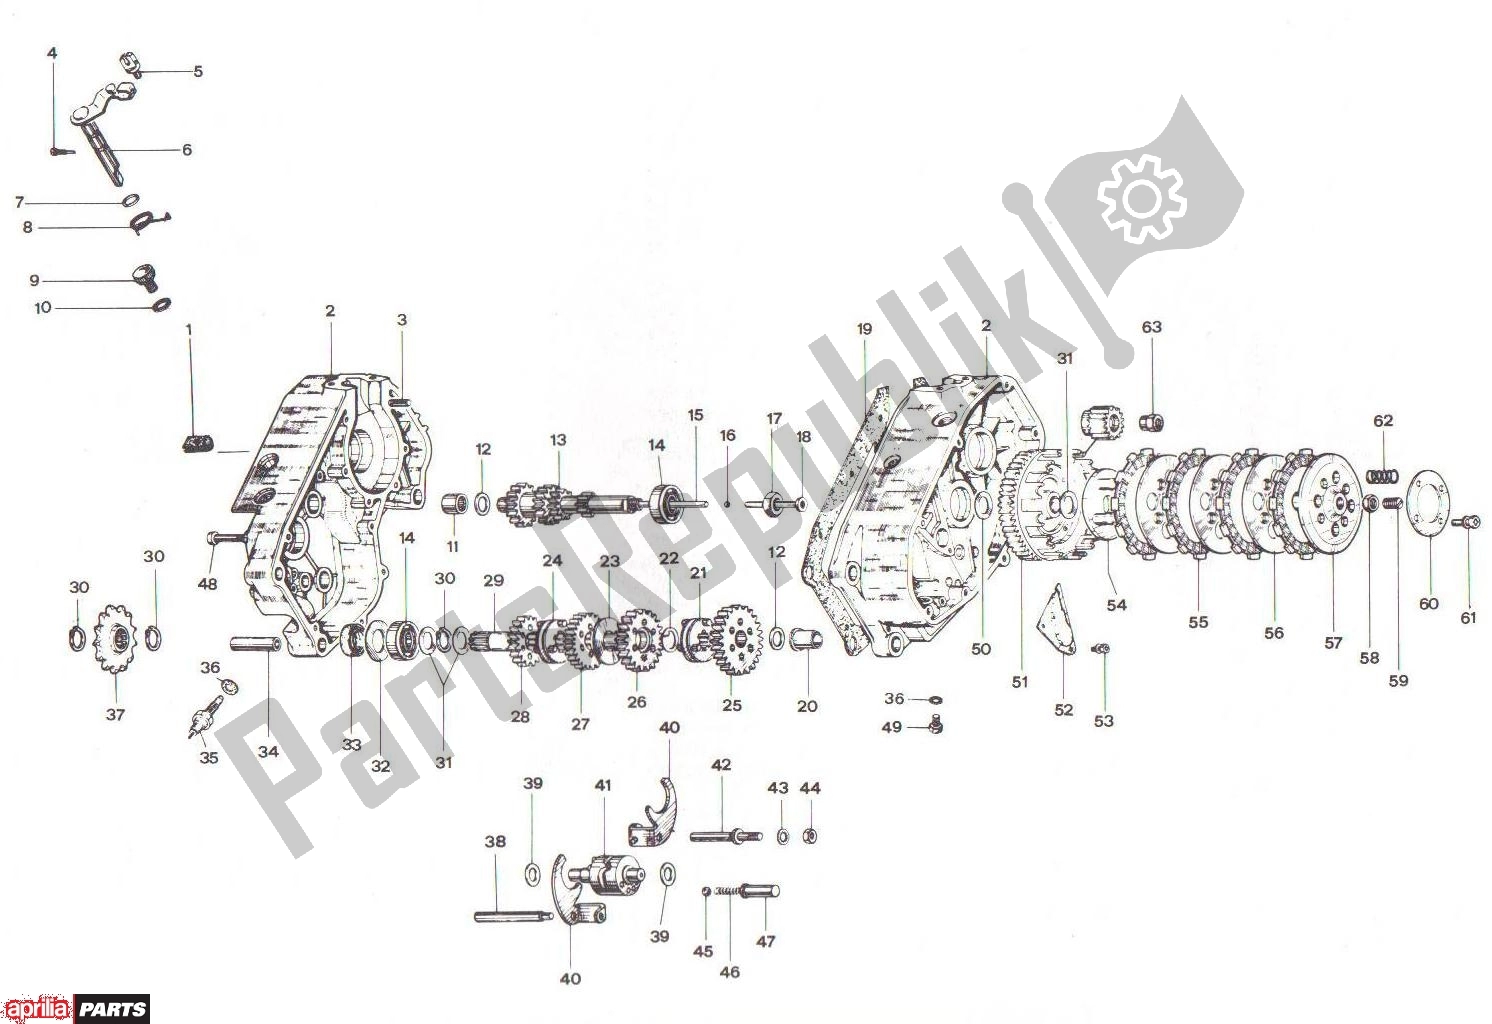 Tutte le parti per il Crankcase Clutch Transmission Basamento Frizione Cambio del Aprilia RV3/4 700 50 1986 - 1992